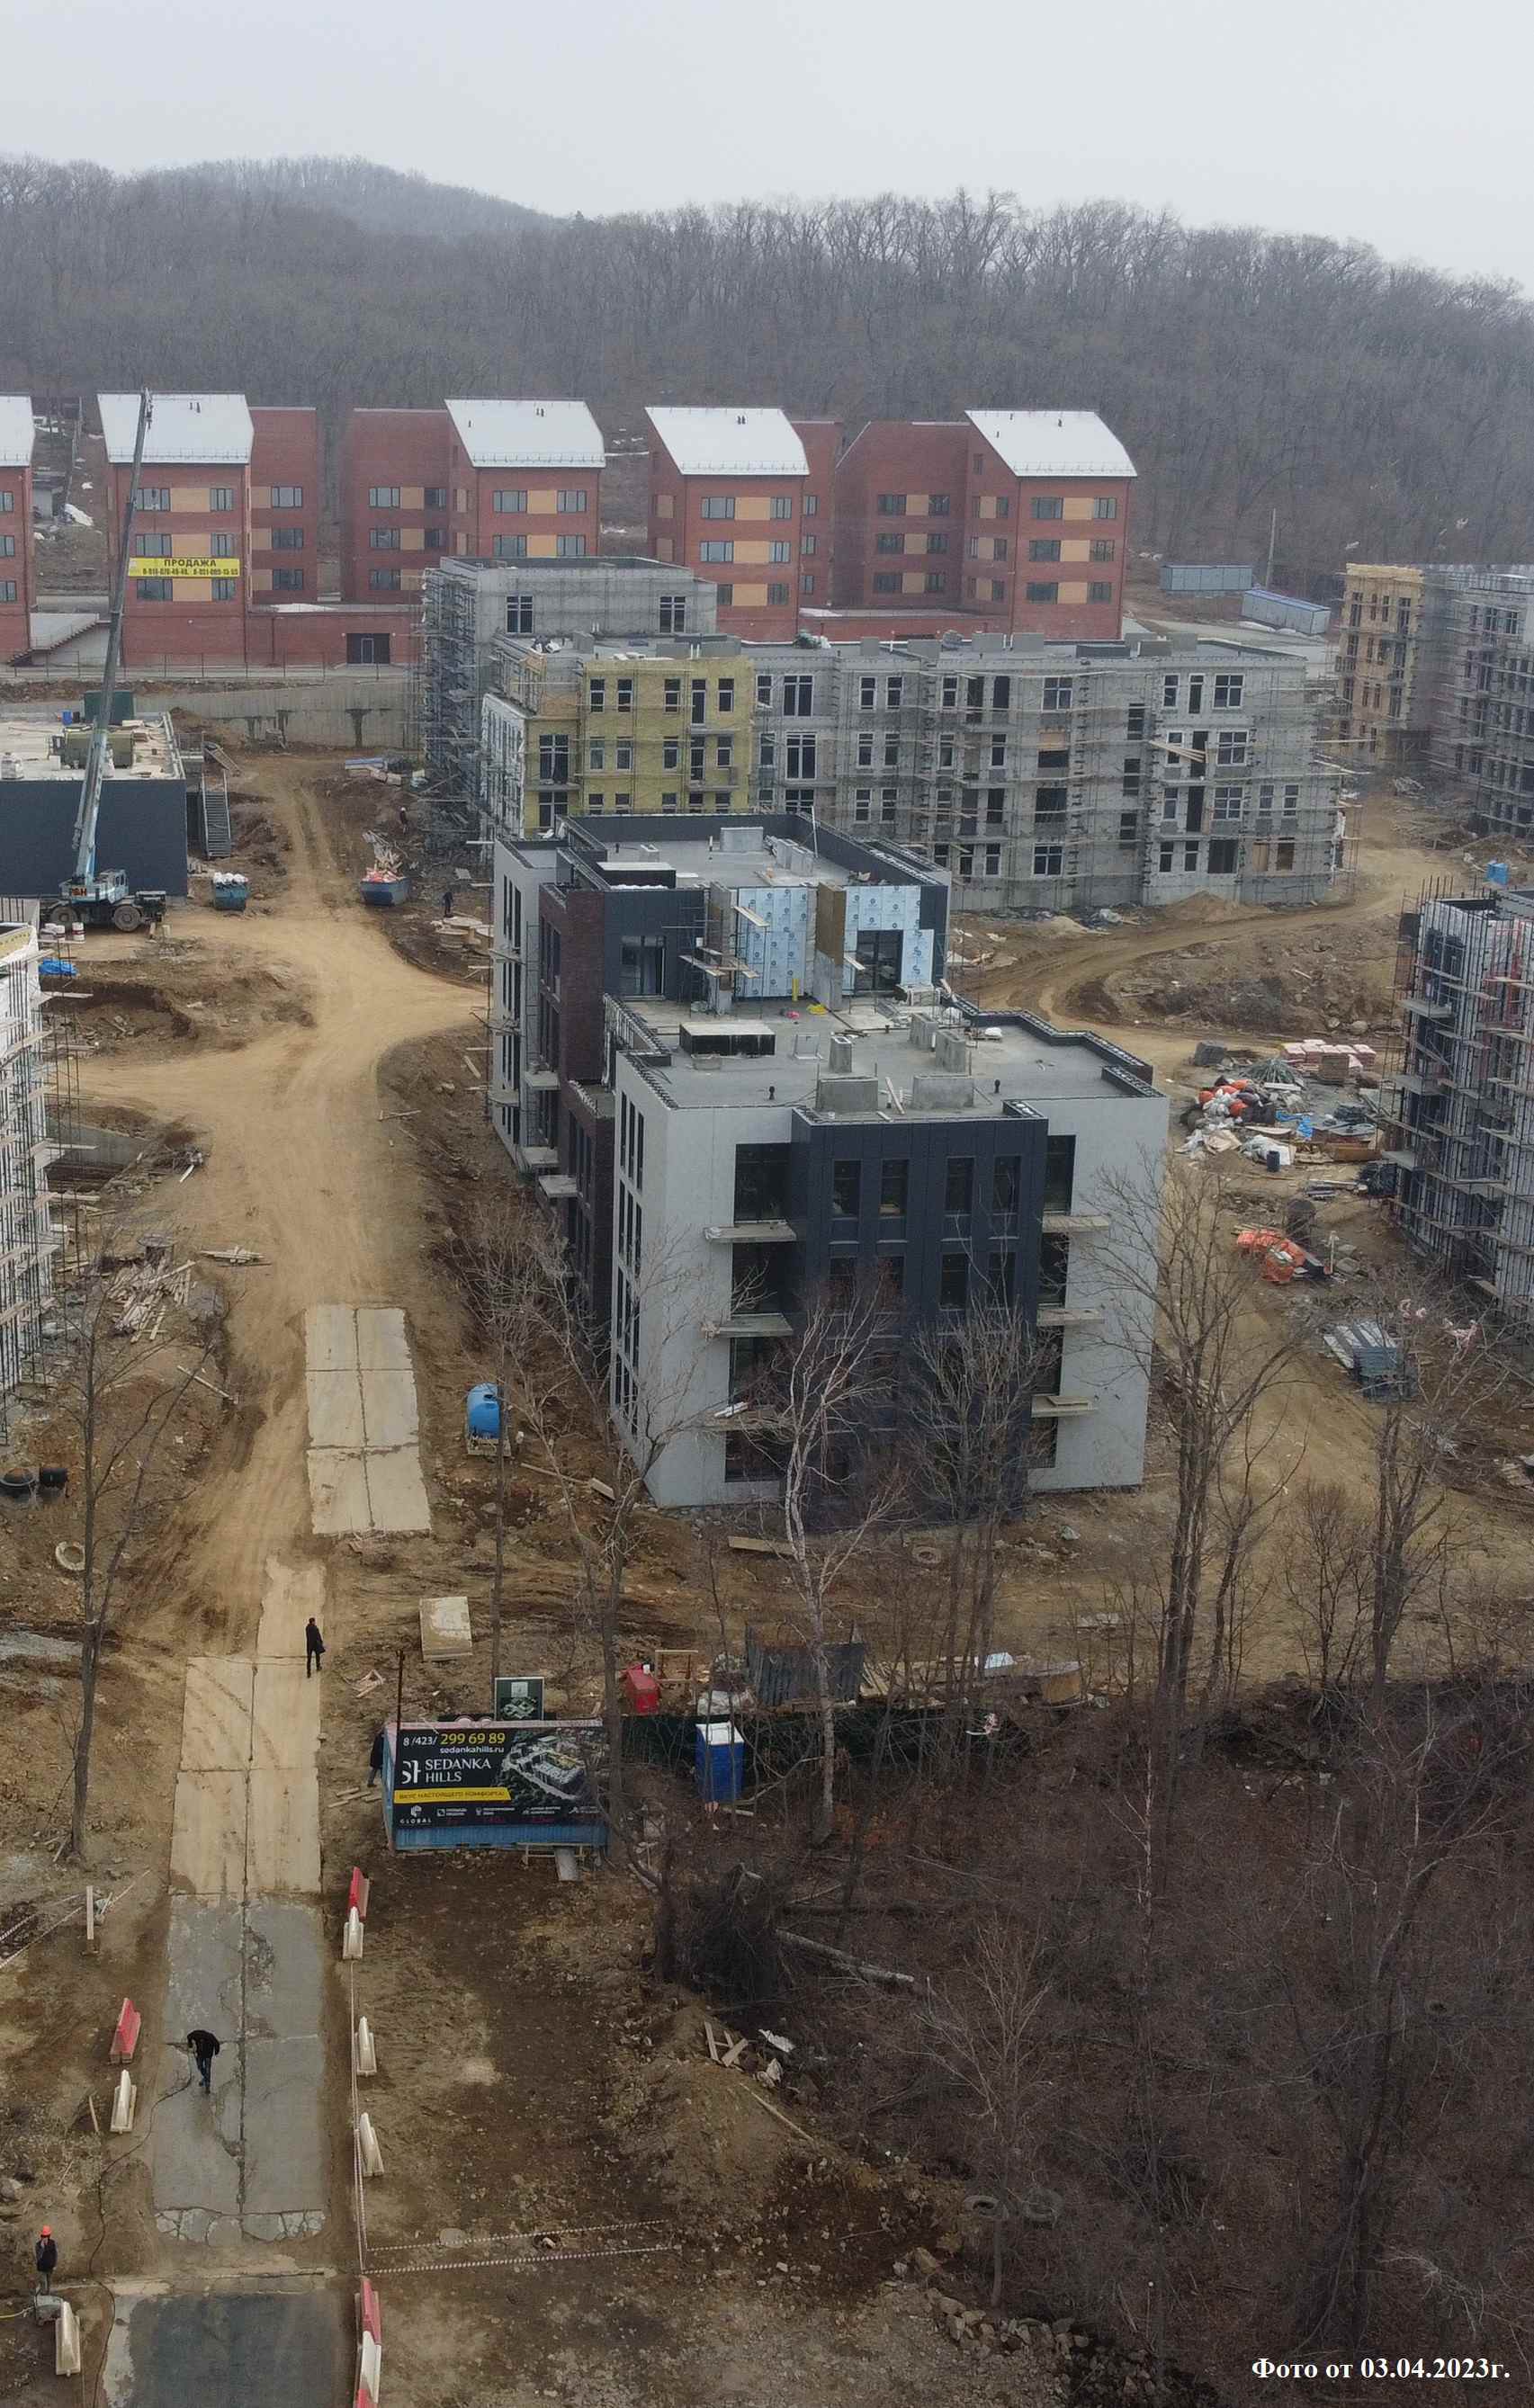 Жилой комплекс Седанка хилс / Sedanka hills, Апрель, 2023